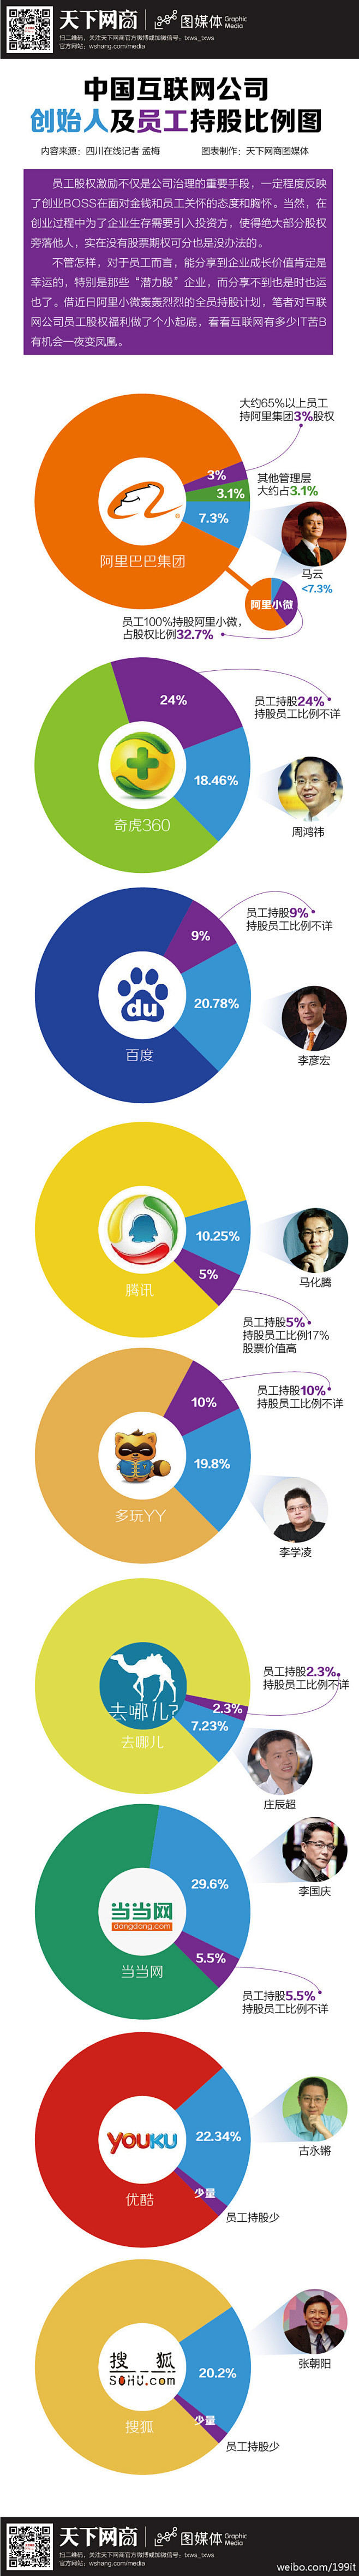 【中国互联网企业员工及创始人的持股比例】...